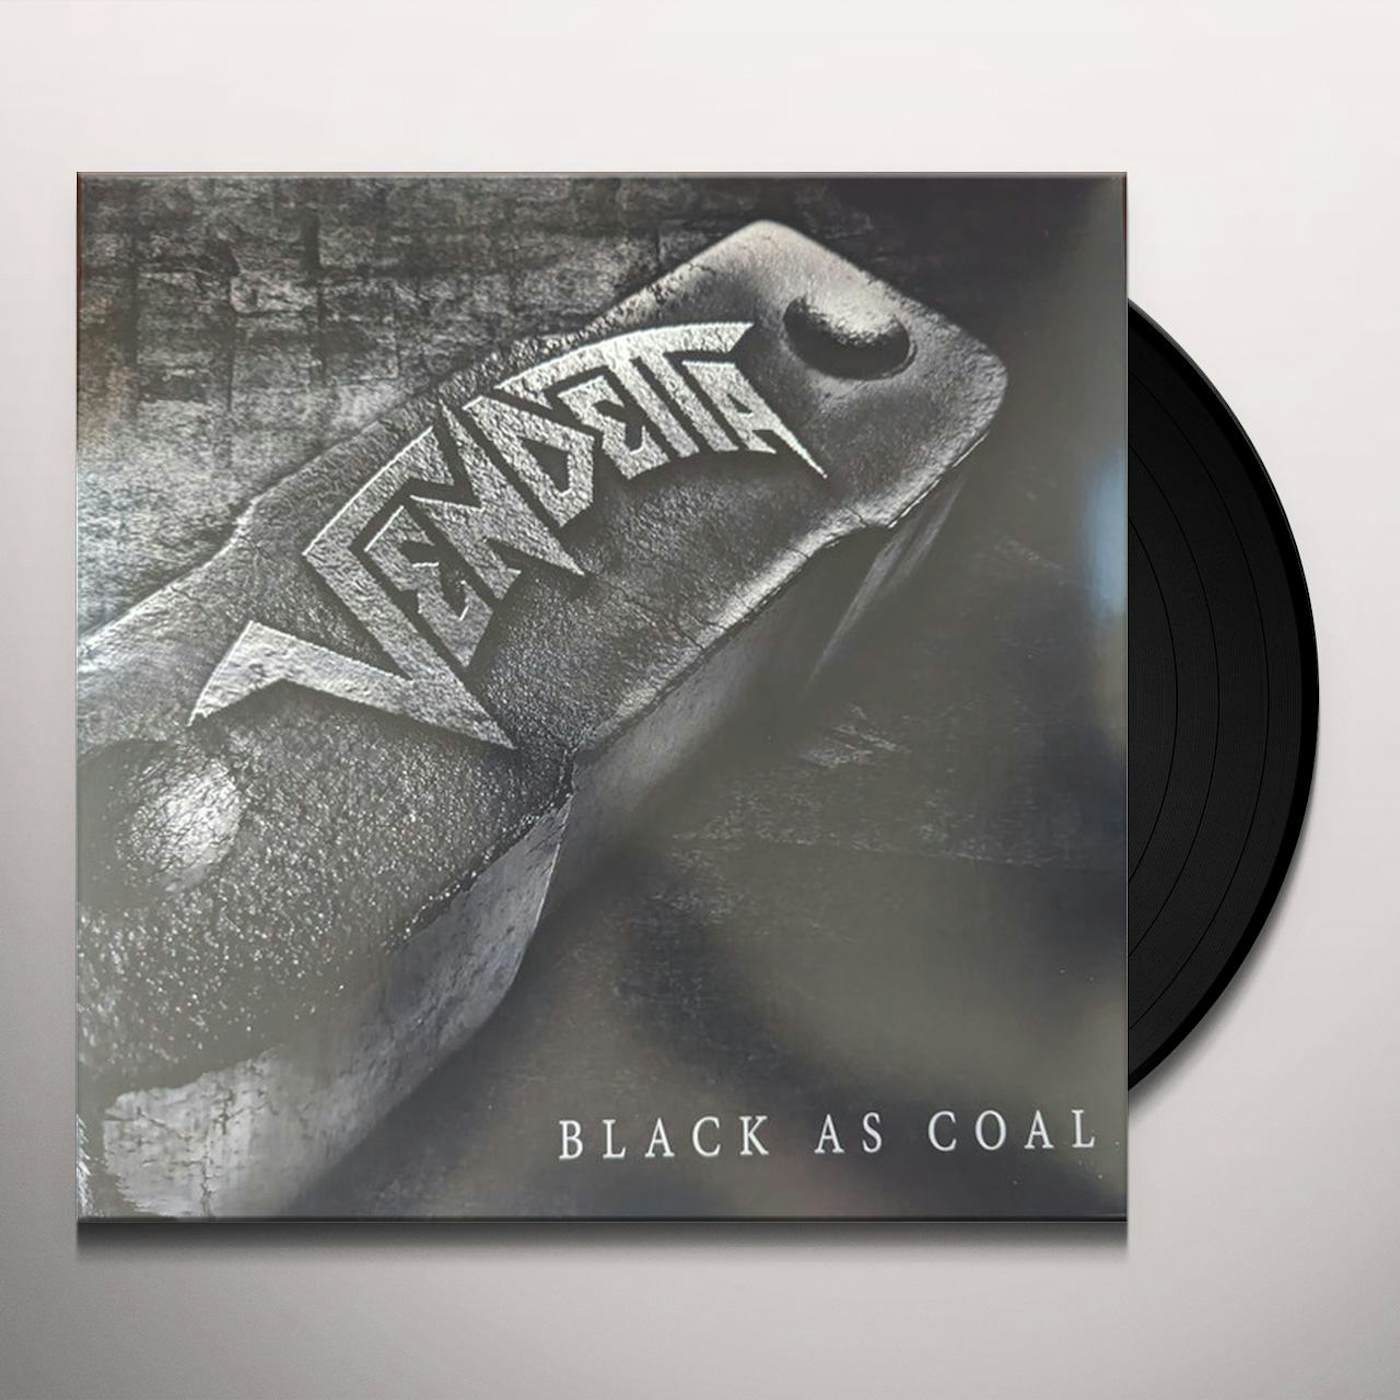 Metallica Black Album Cover Vinyl CD / Vinyl